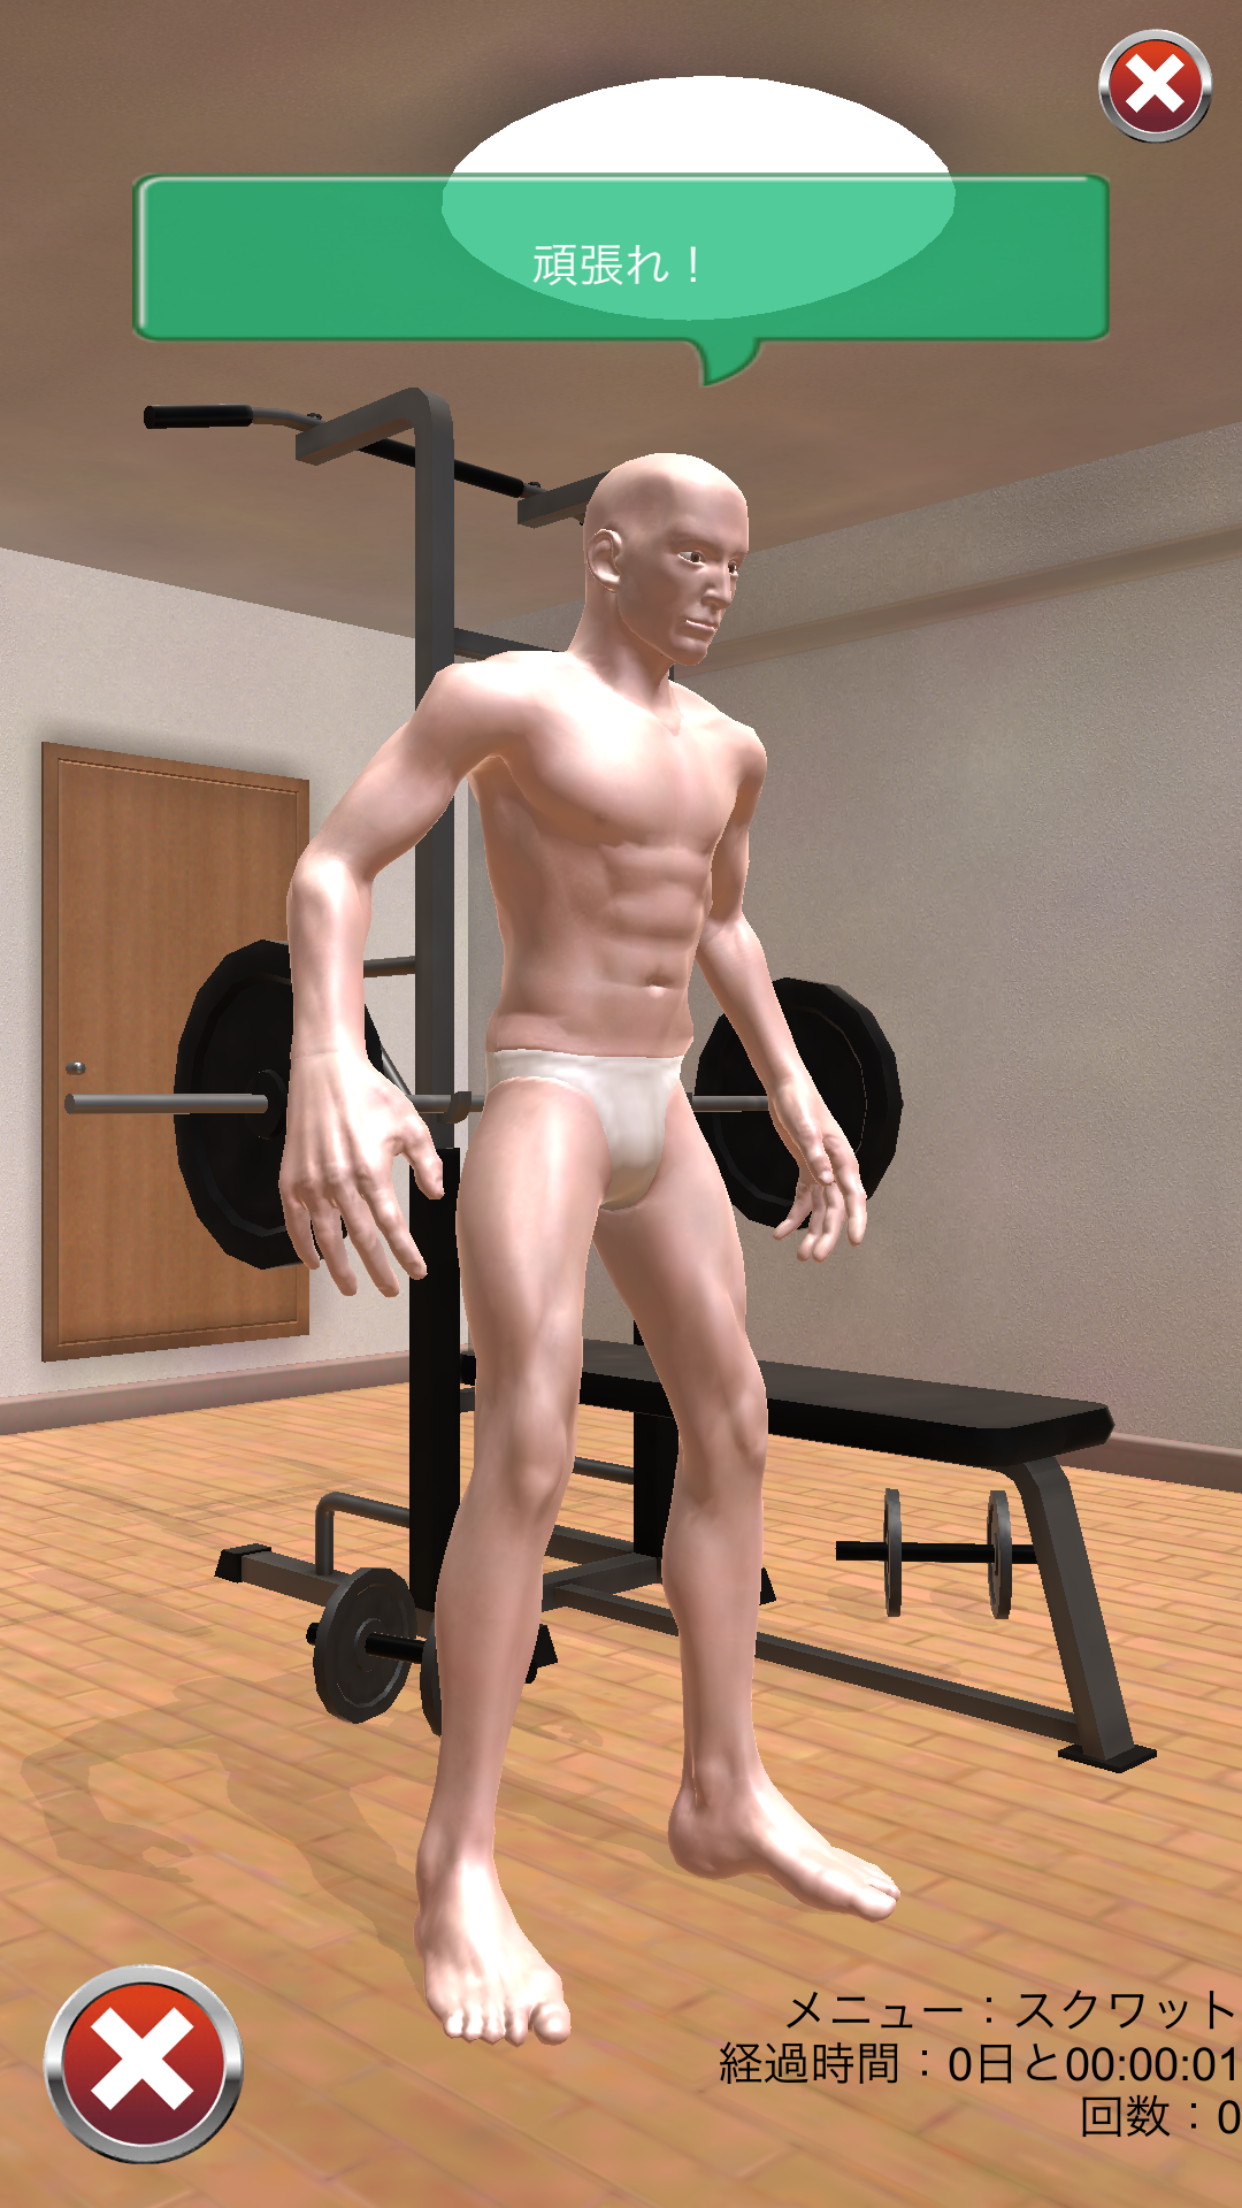 画像集 004 常識を越えた肉体改造がここにある 筋肉育成シミュレーション